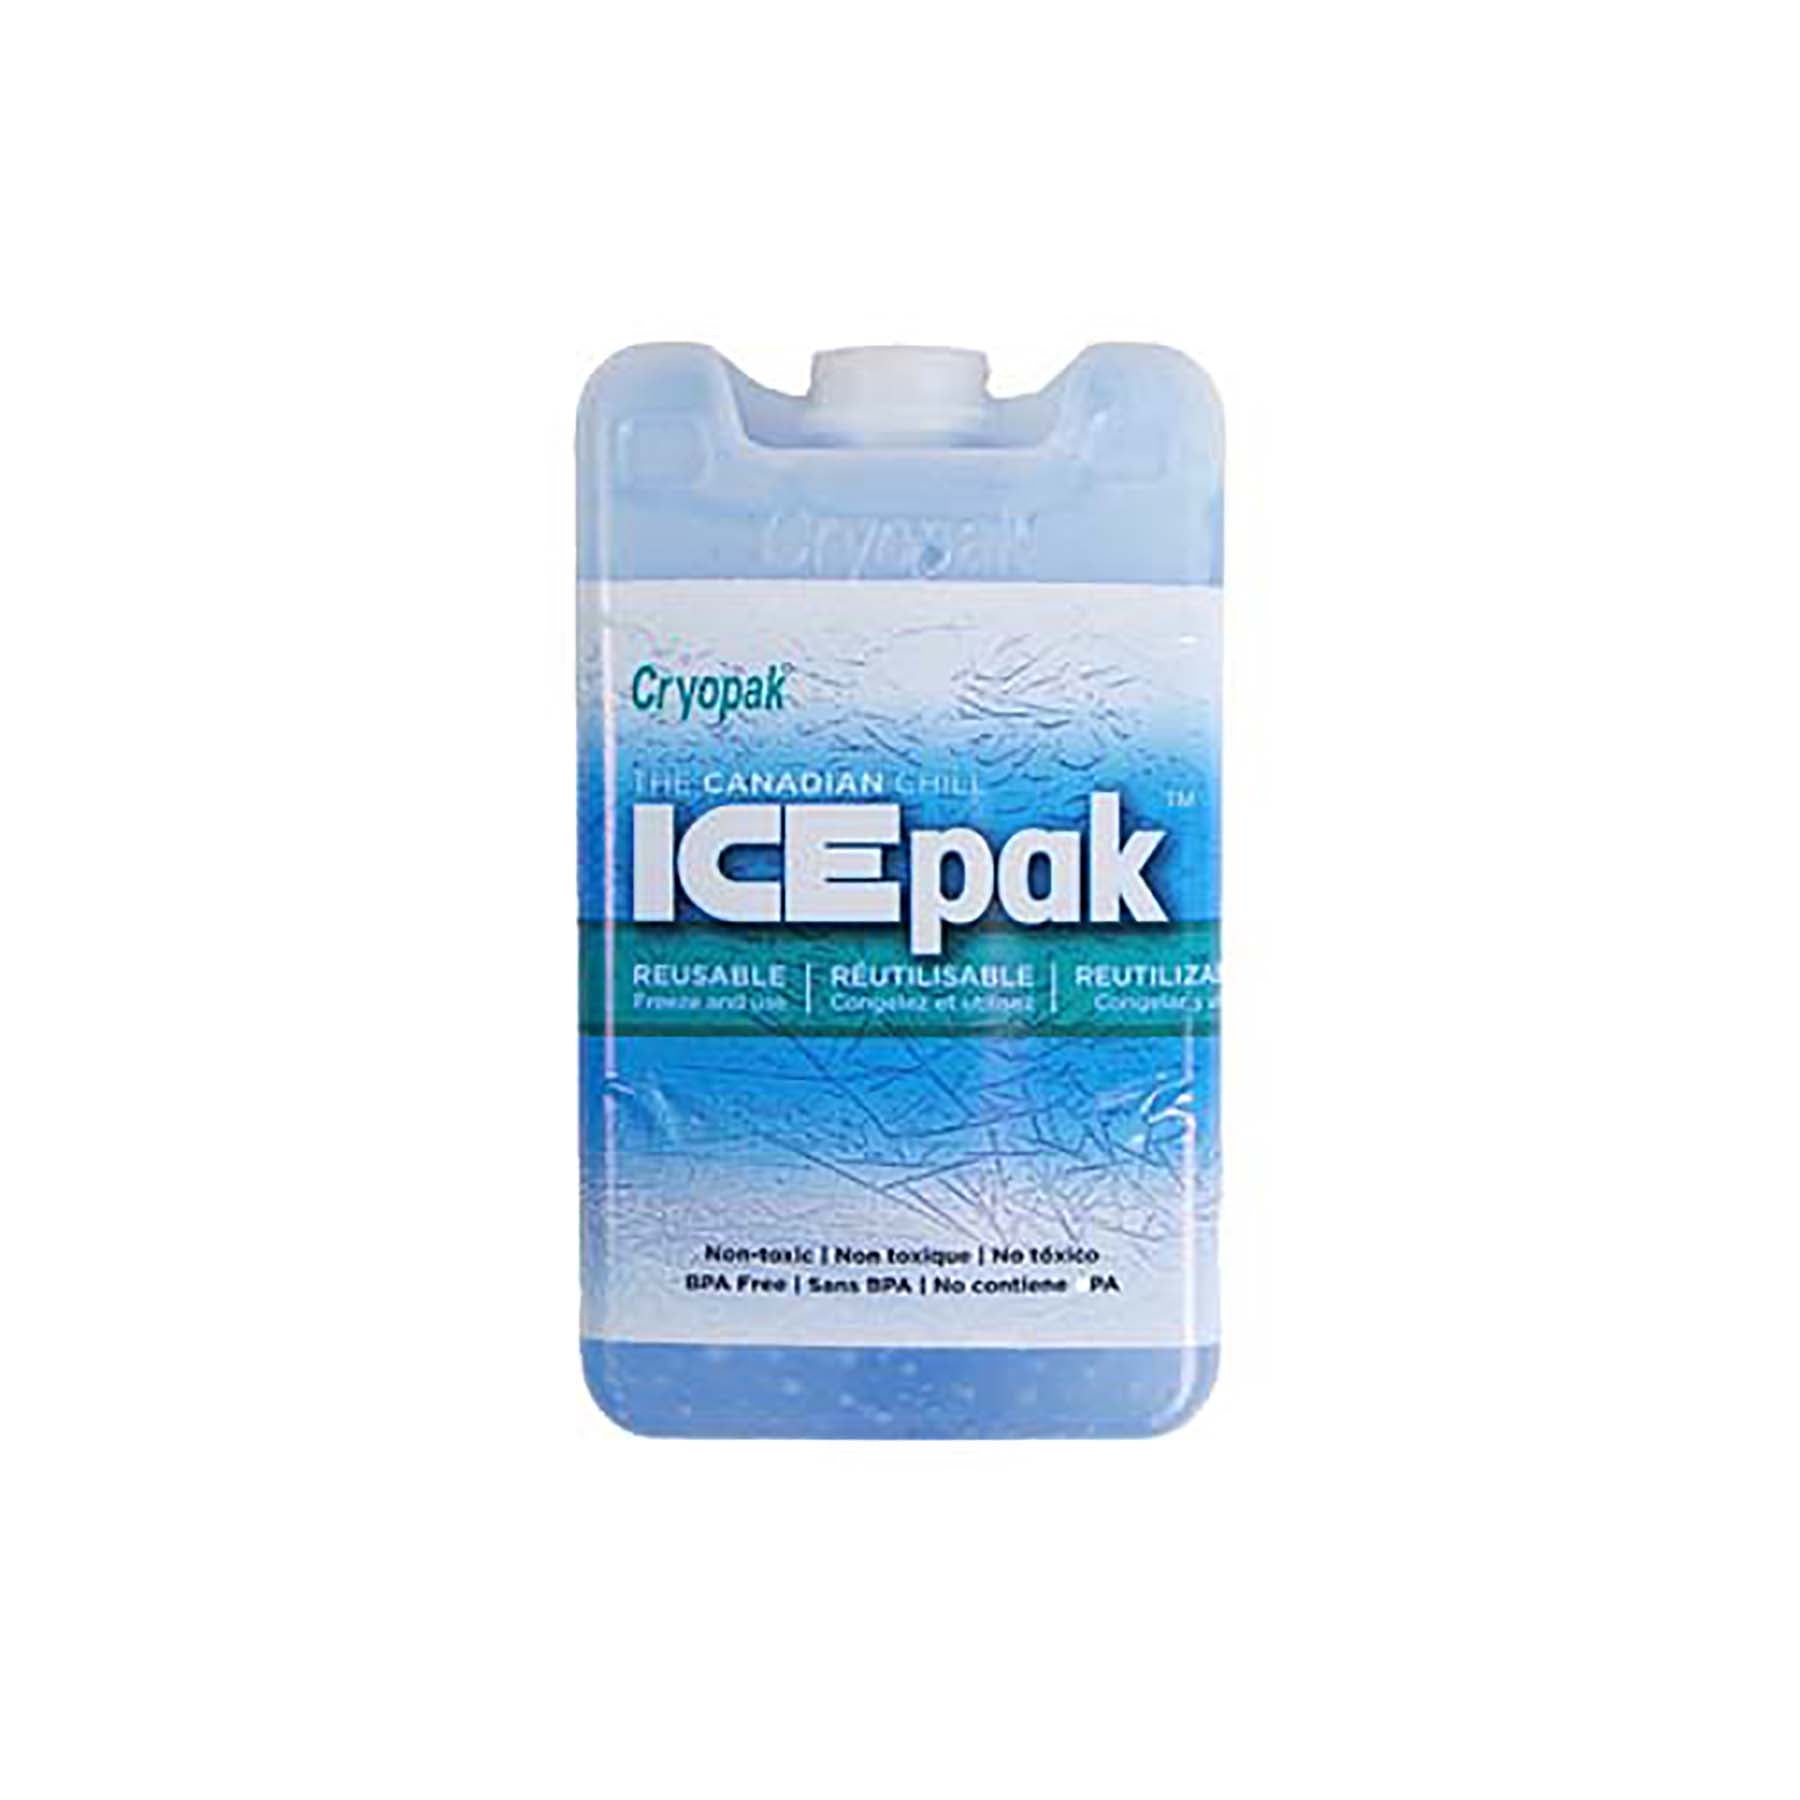 Cryopak Ice Pak Reusable 3x5x1.5in